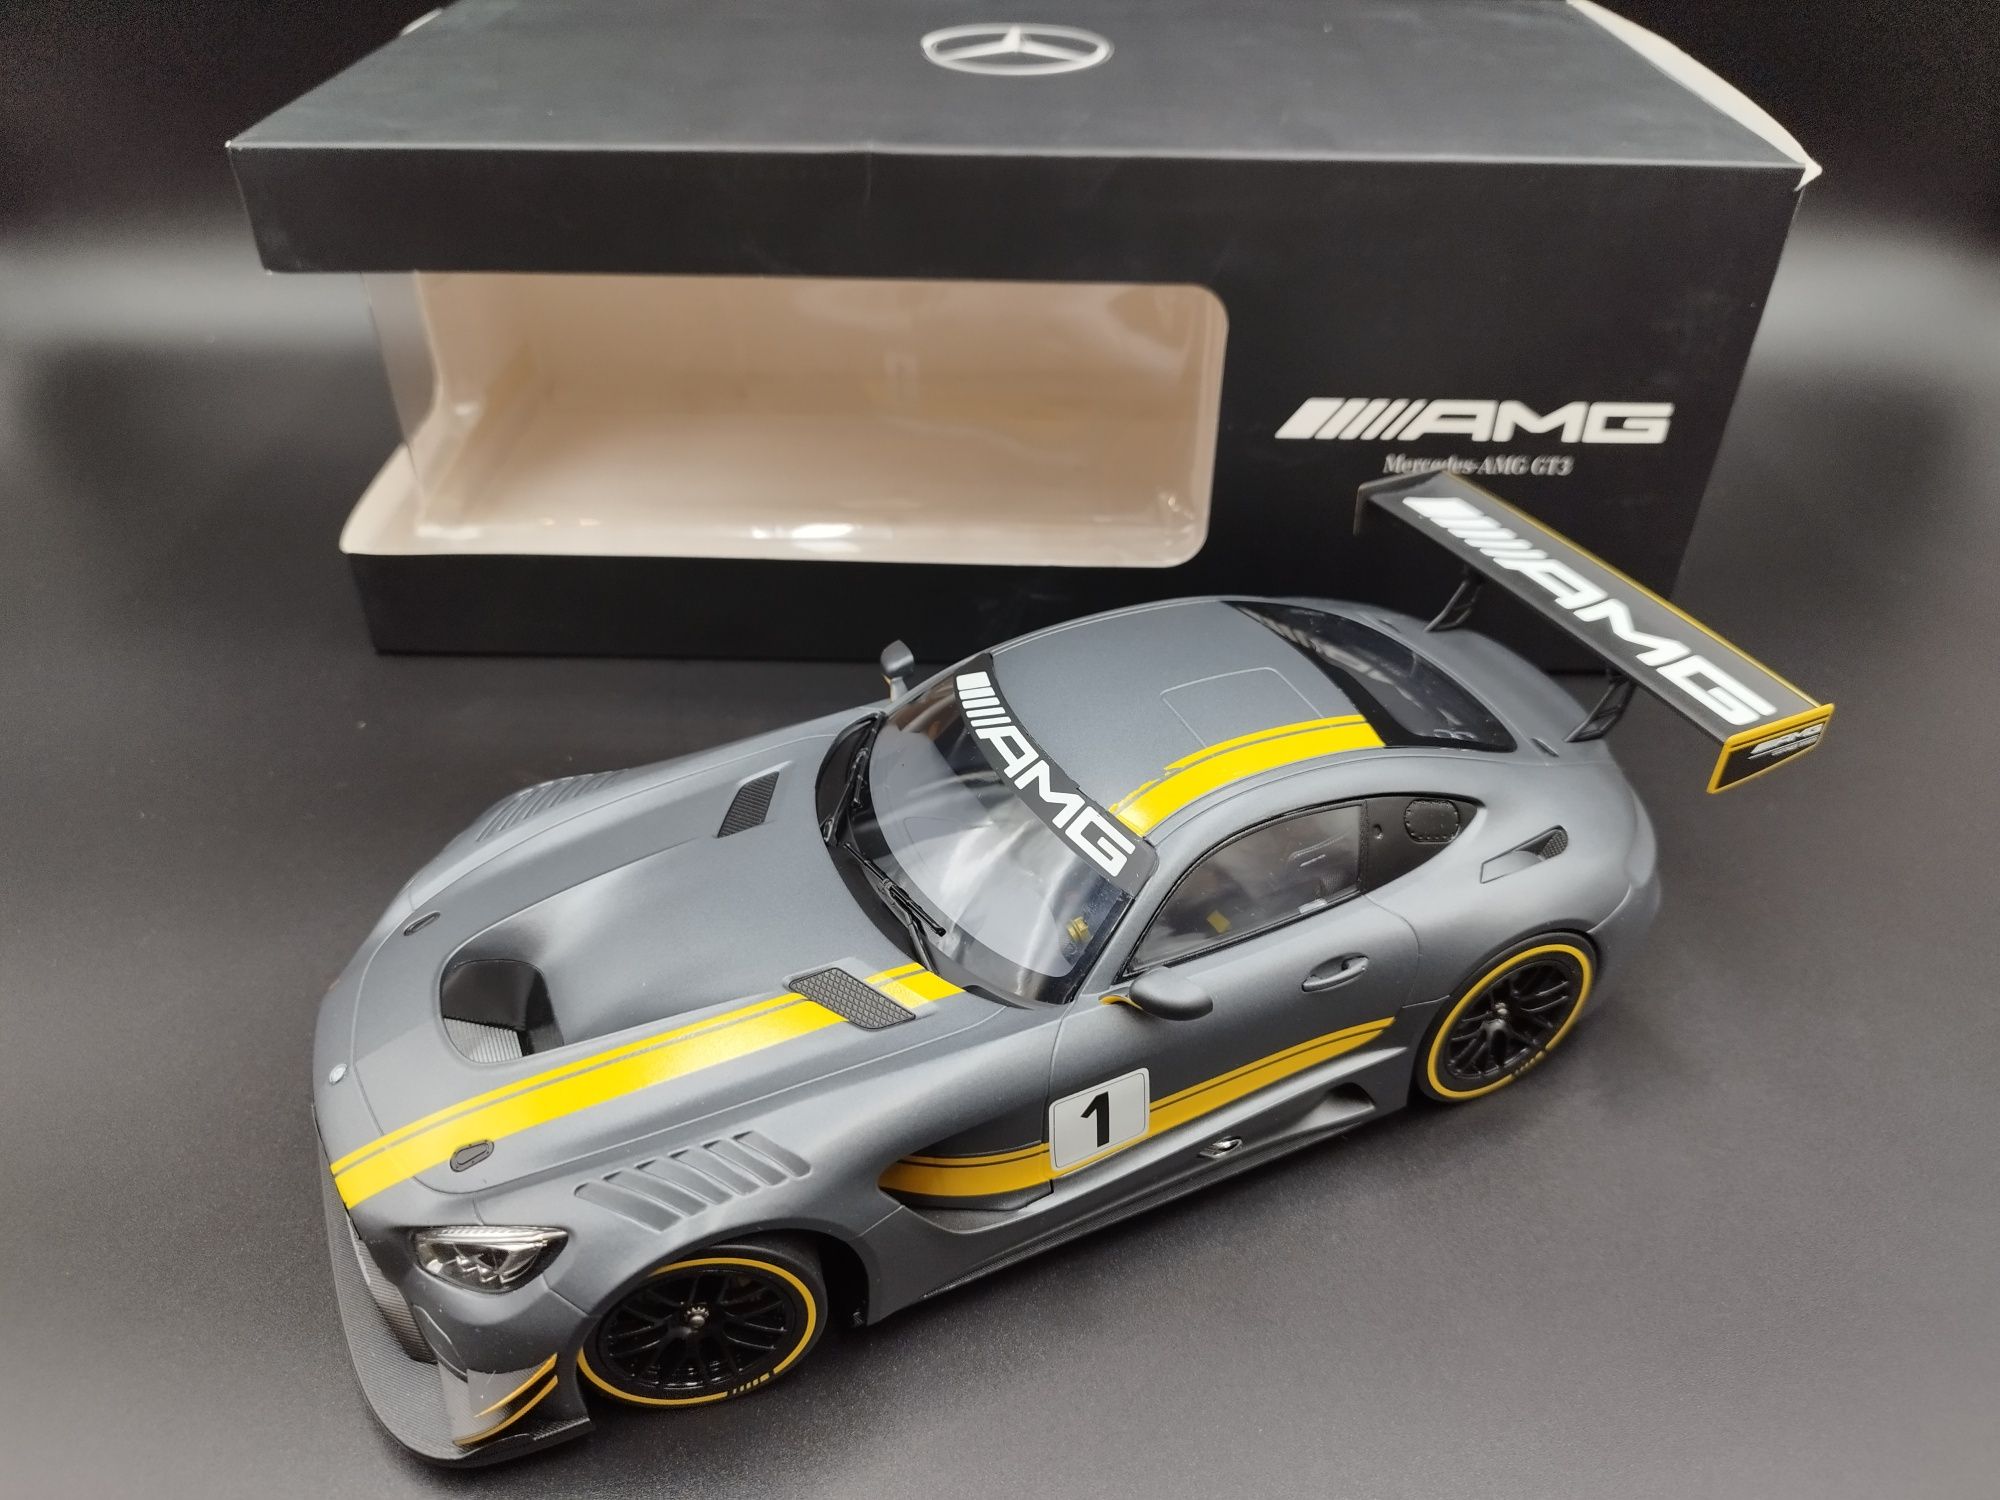 1:18 Norev Mercedes AMG-GT3 model